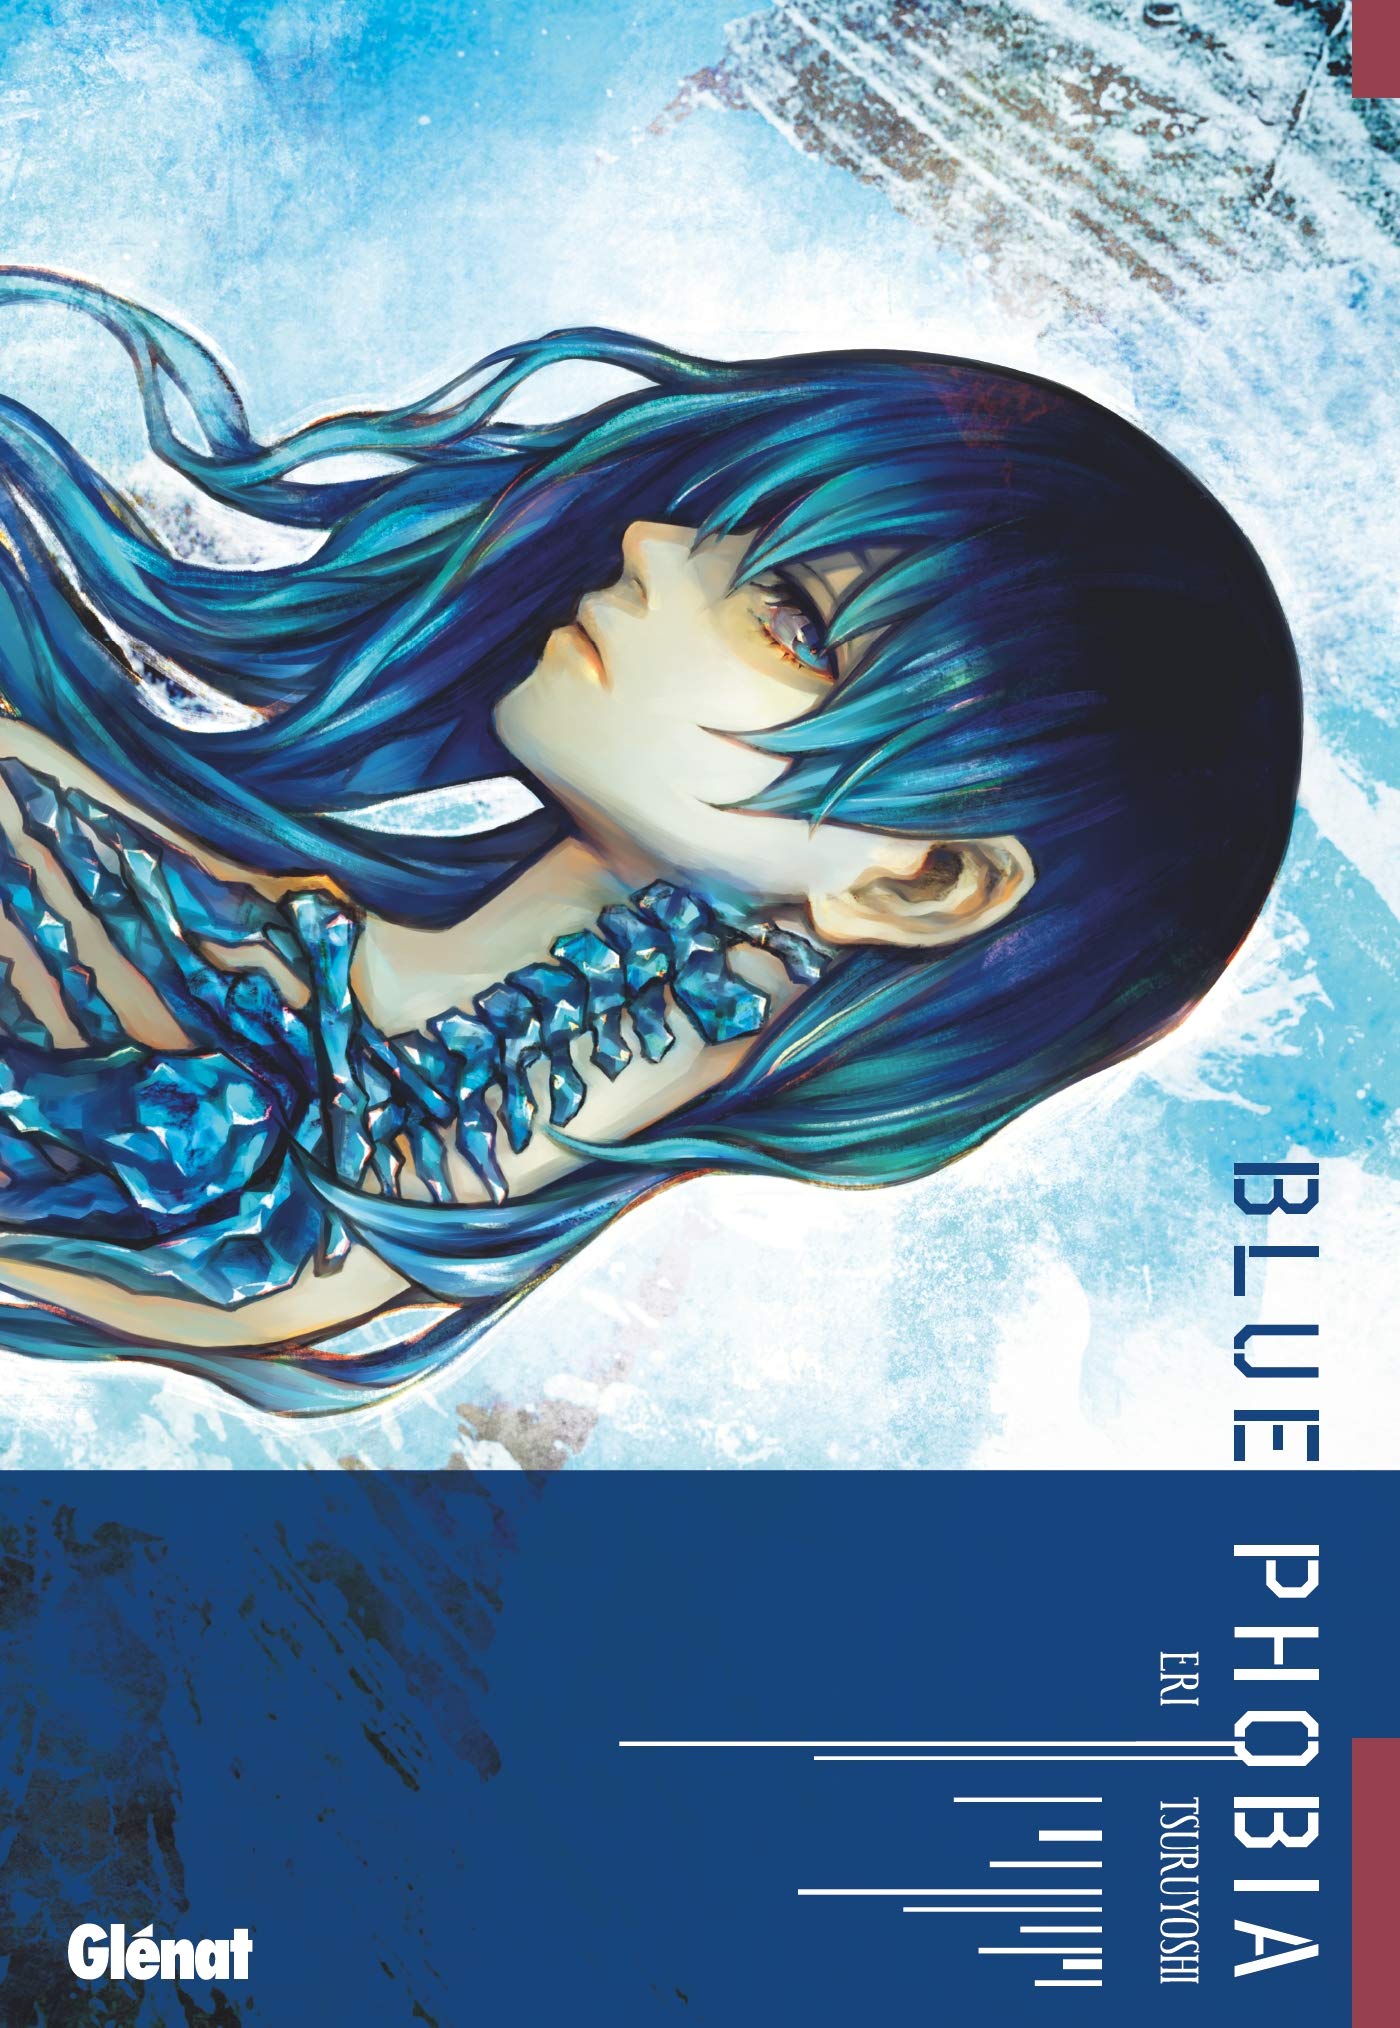 ○ Blue Phobia ○